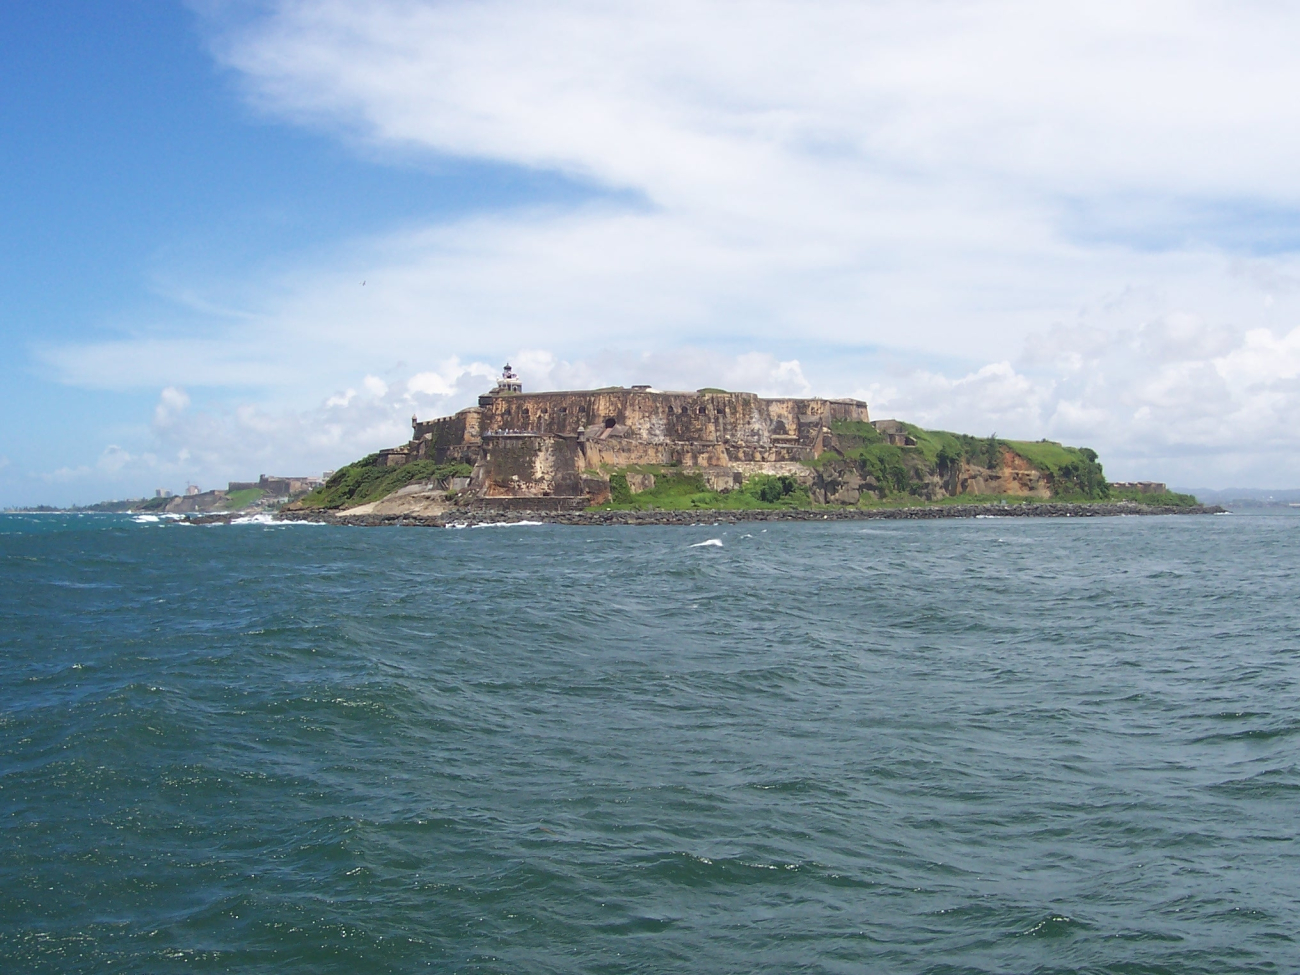 El Moro Castle guarding the entrance to San Juan Harbor